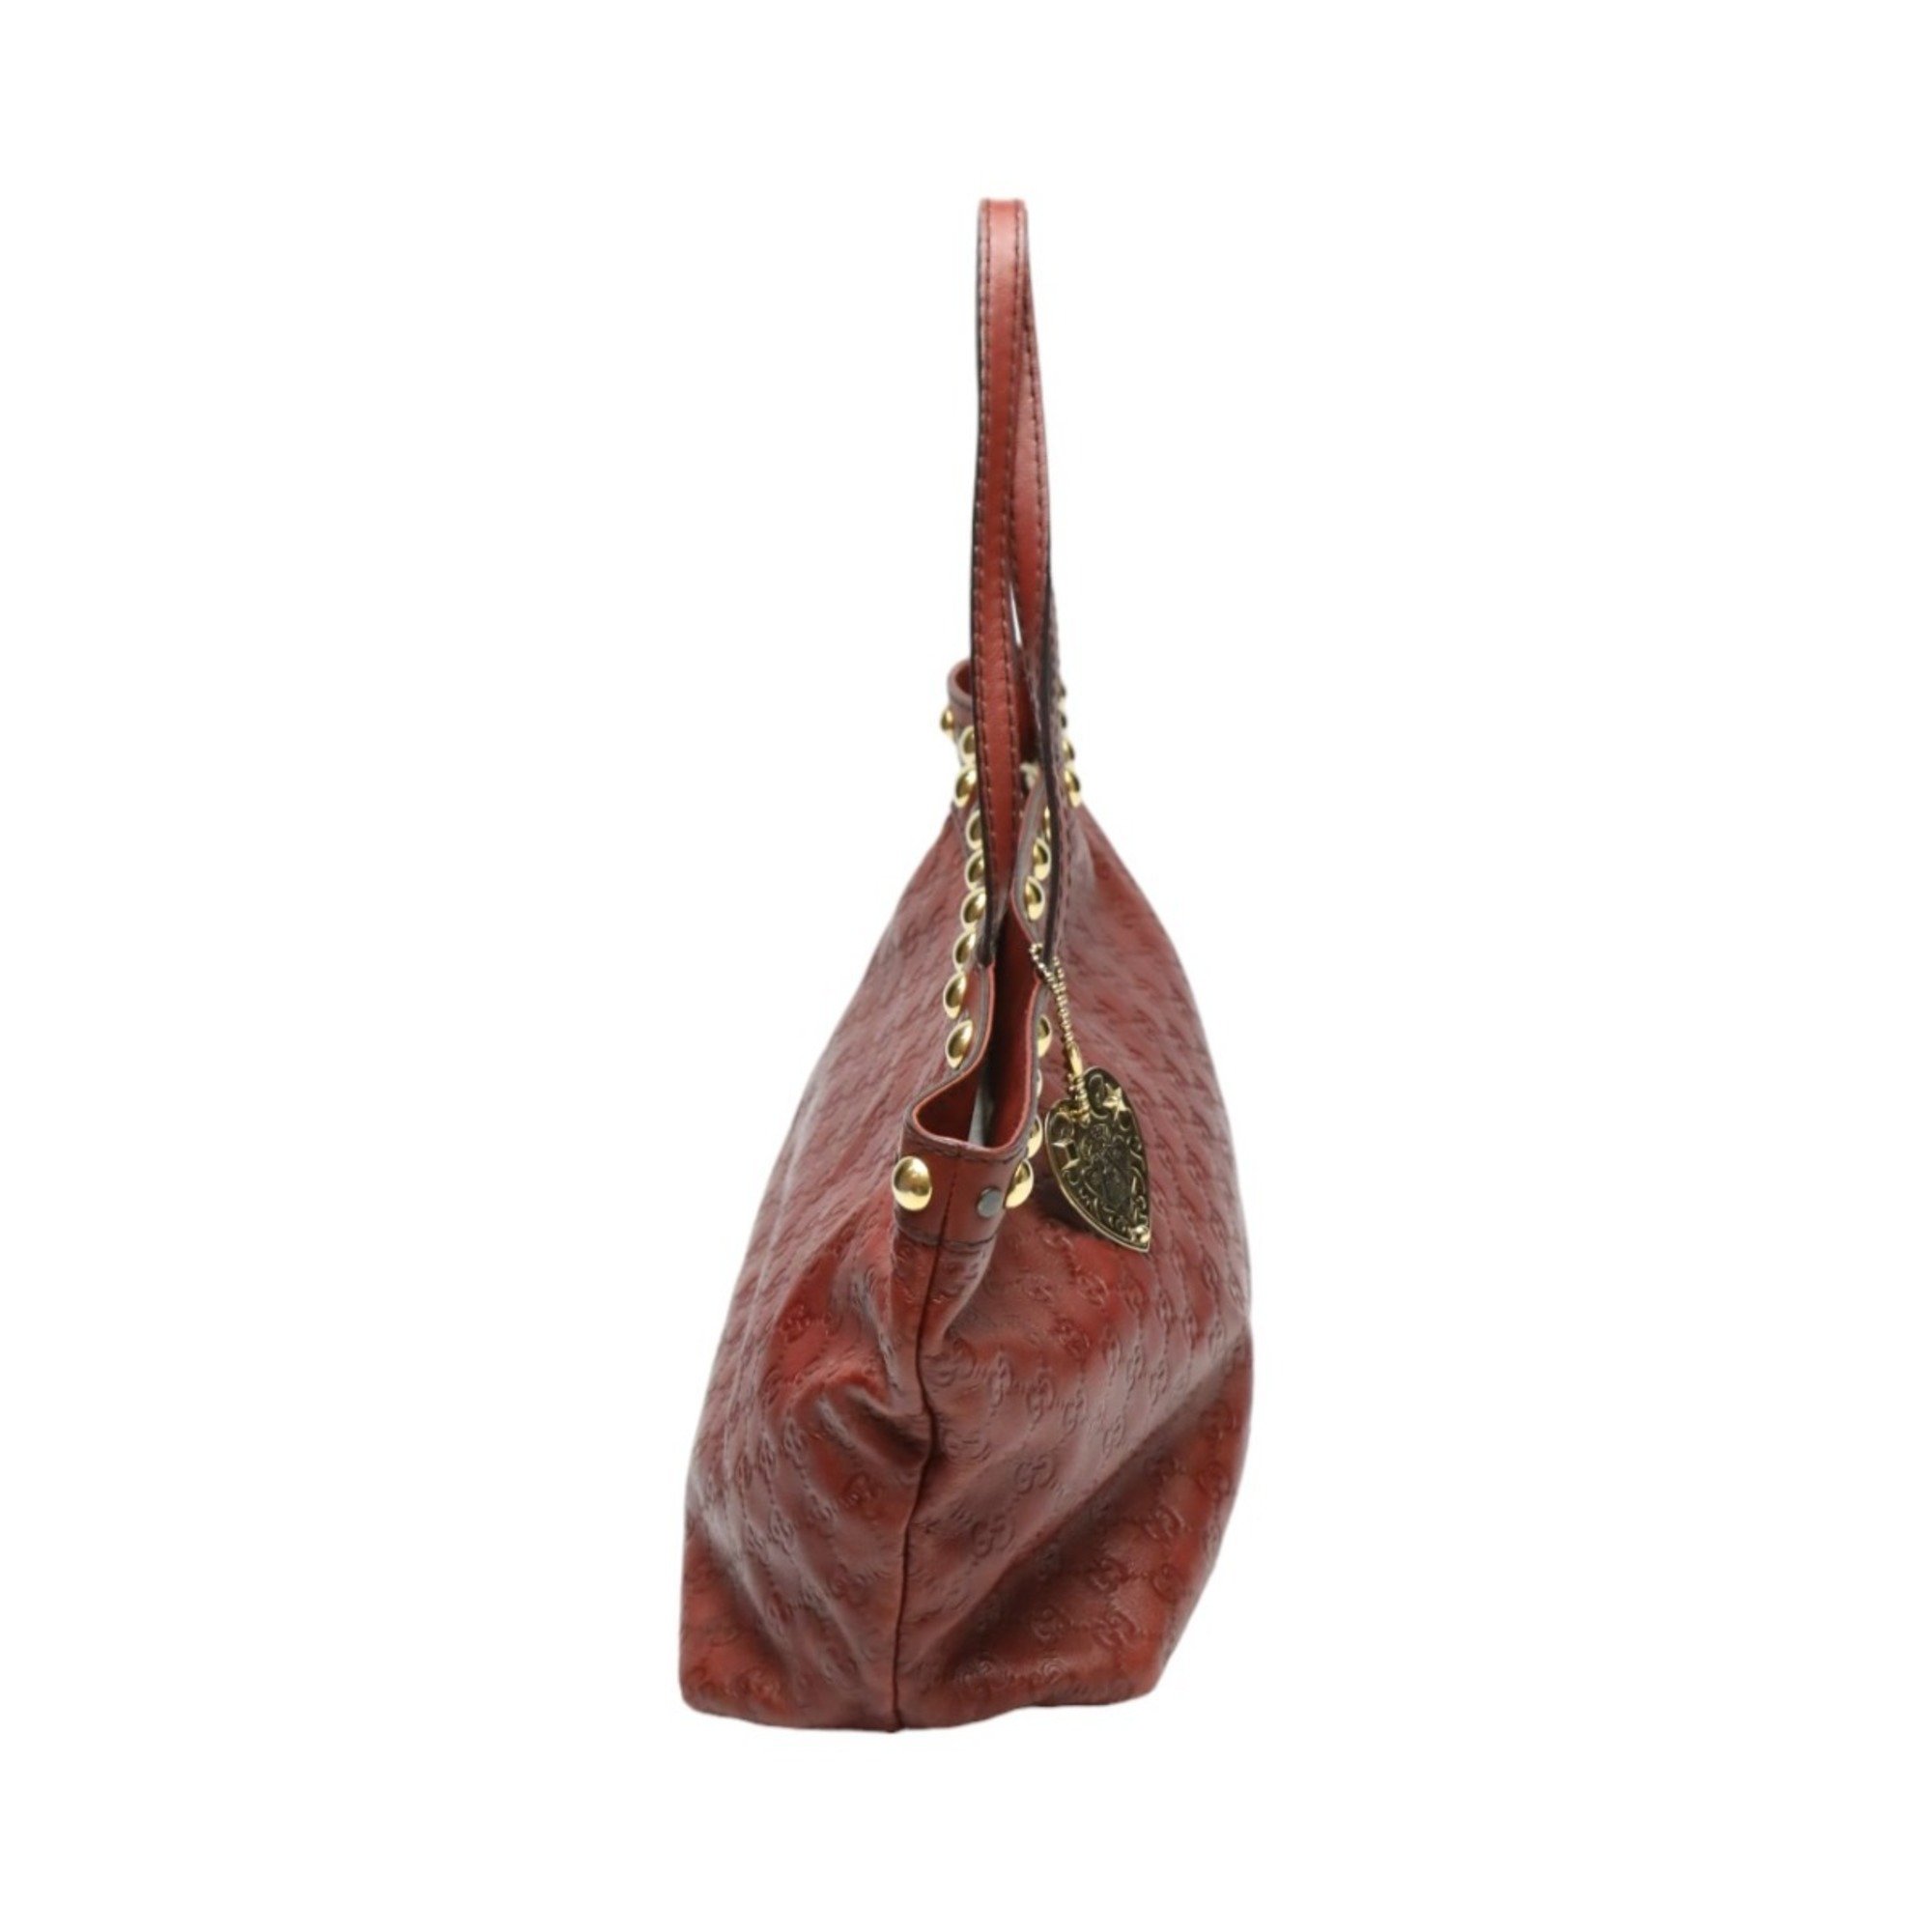 GUCCI Tote Bag Handbag Guccissima 207291 Leather Red